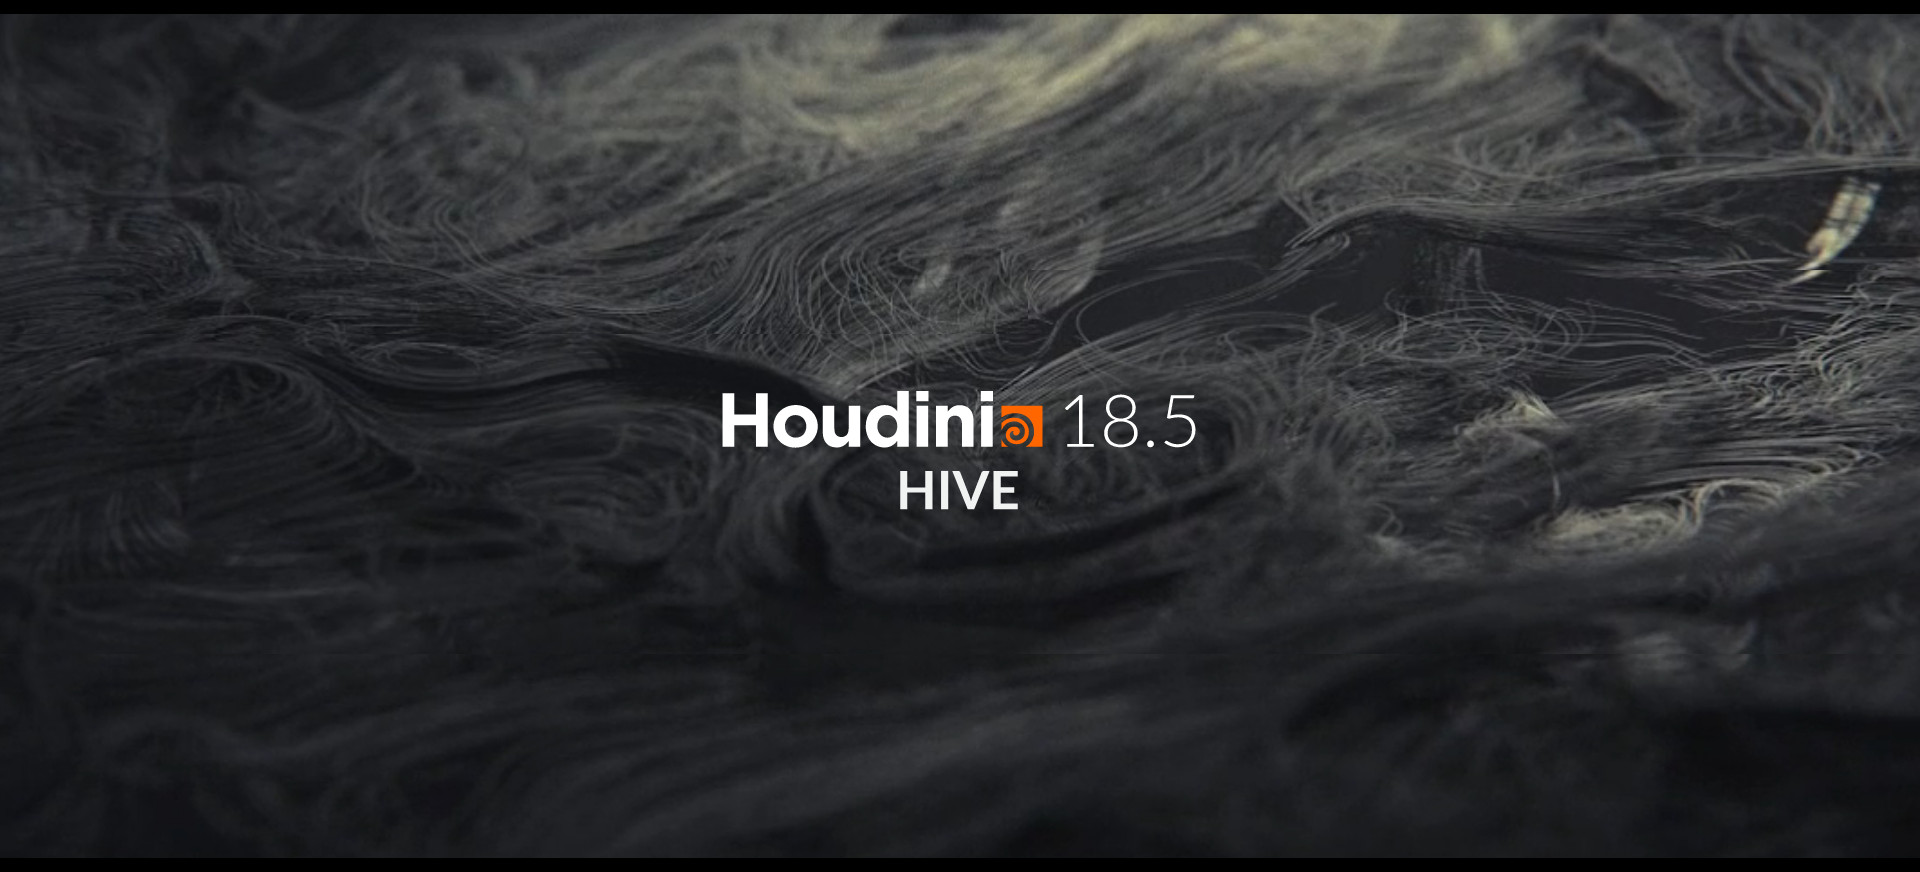 Houdini 18.5 HIVE